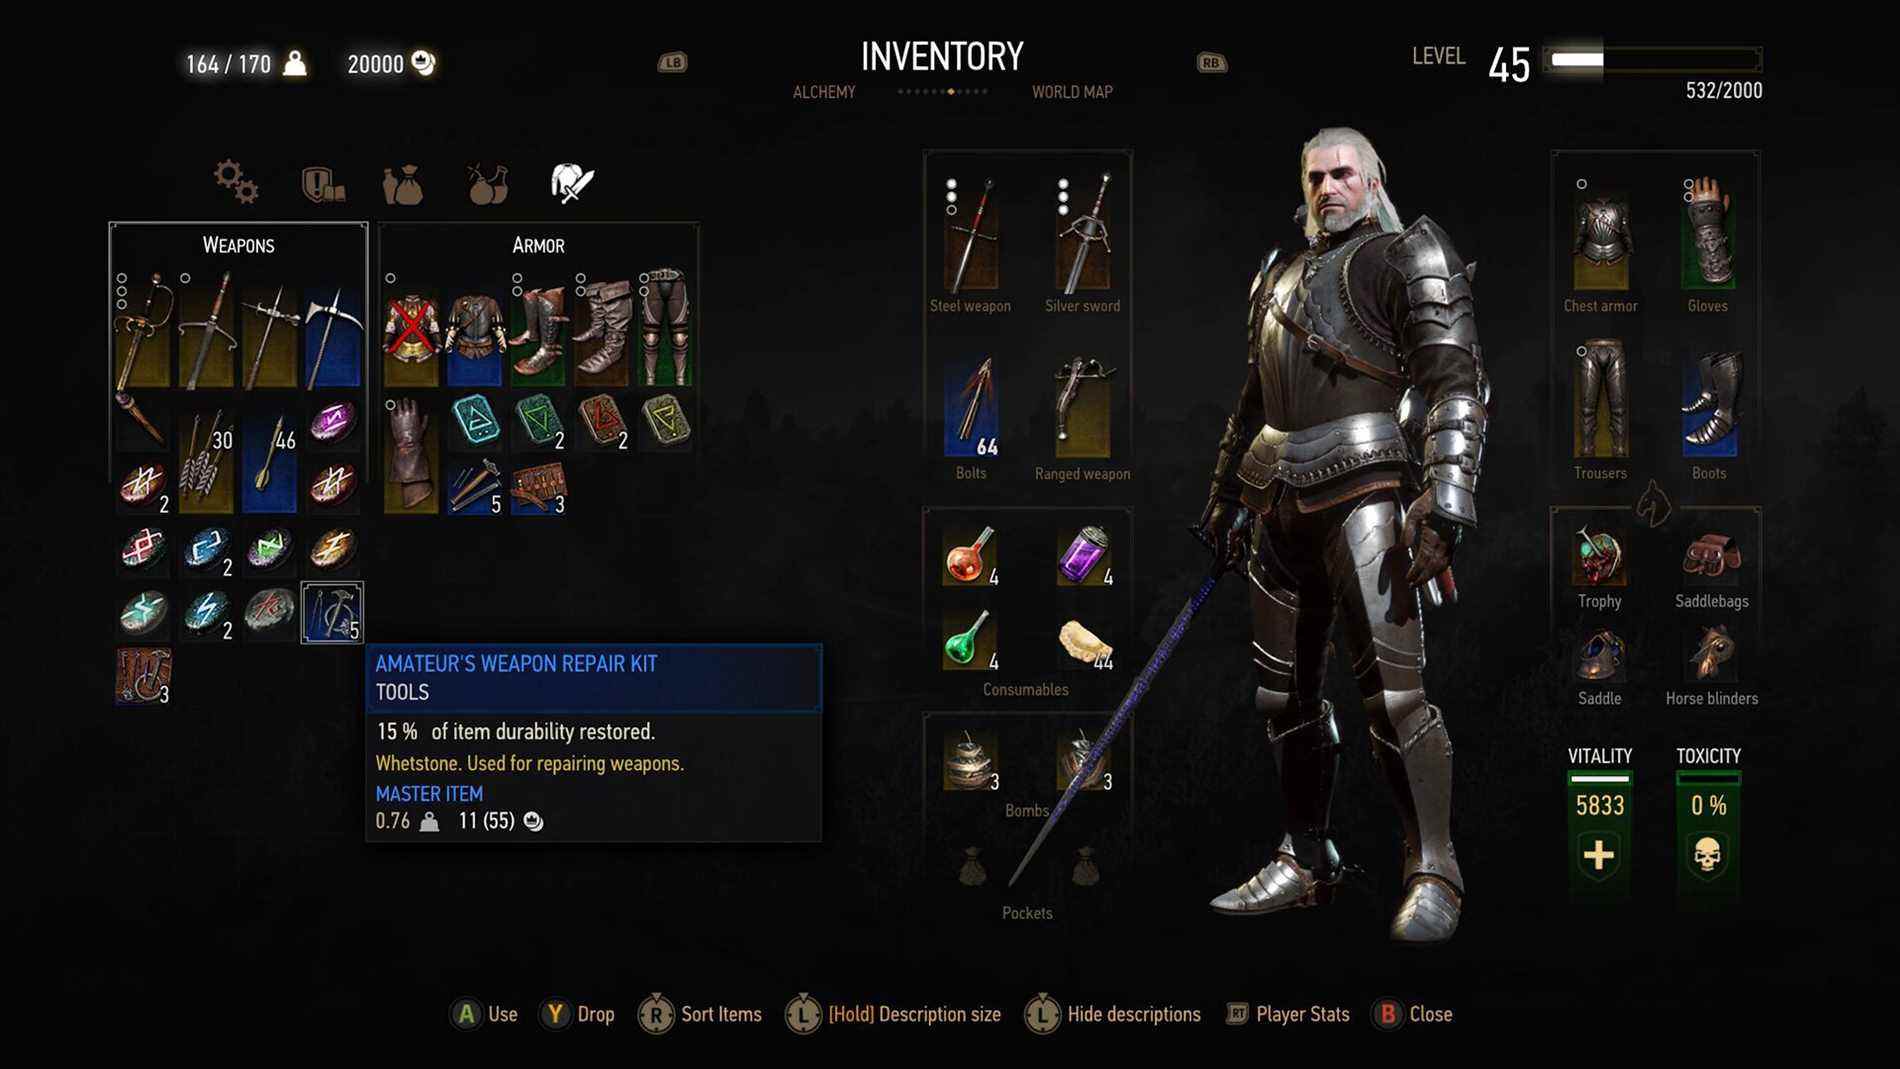 Capture d'écran de l'inventaire de The Witcher 3